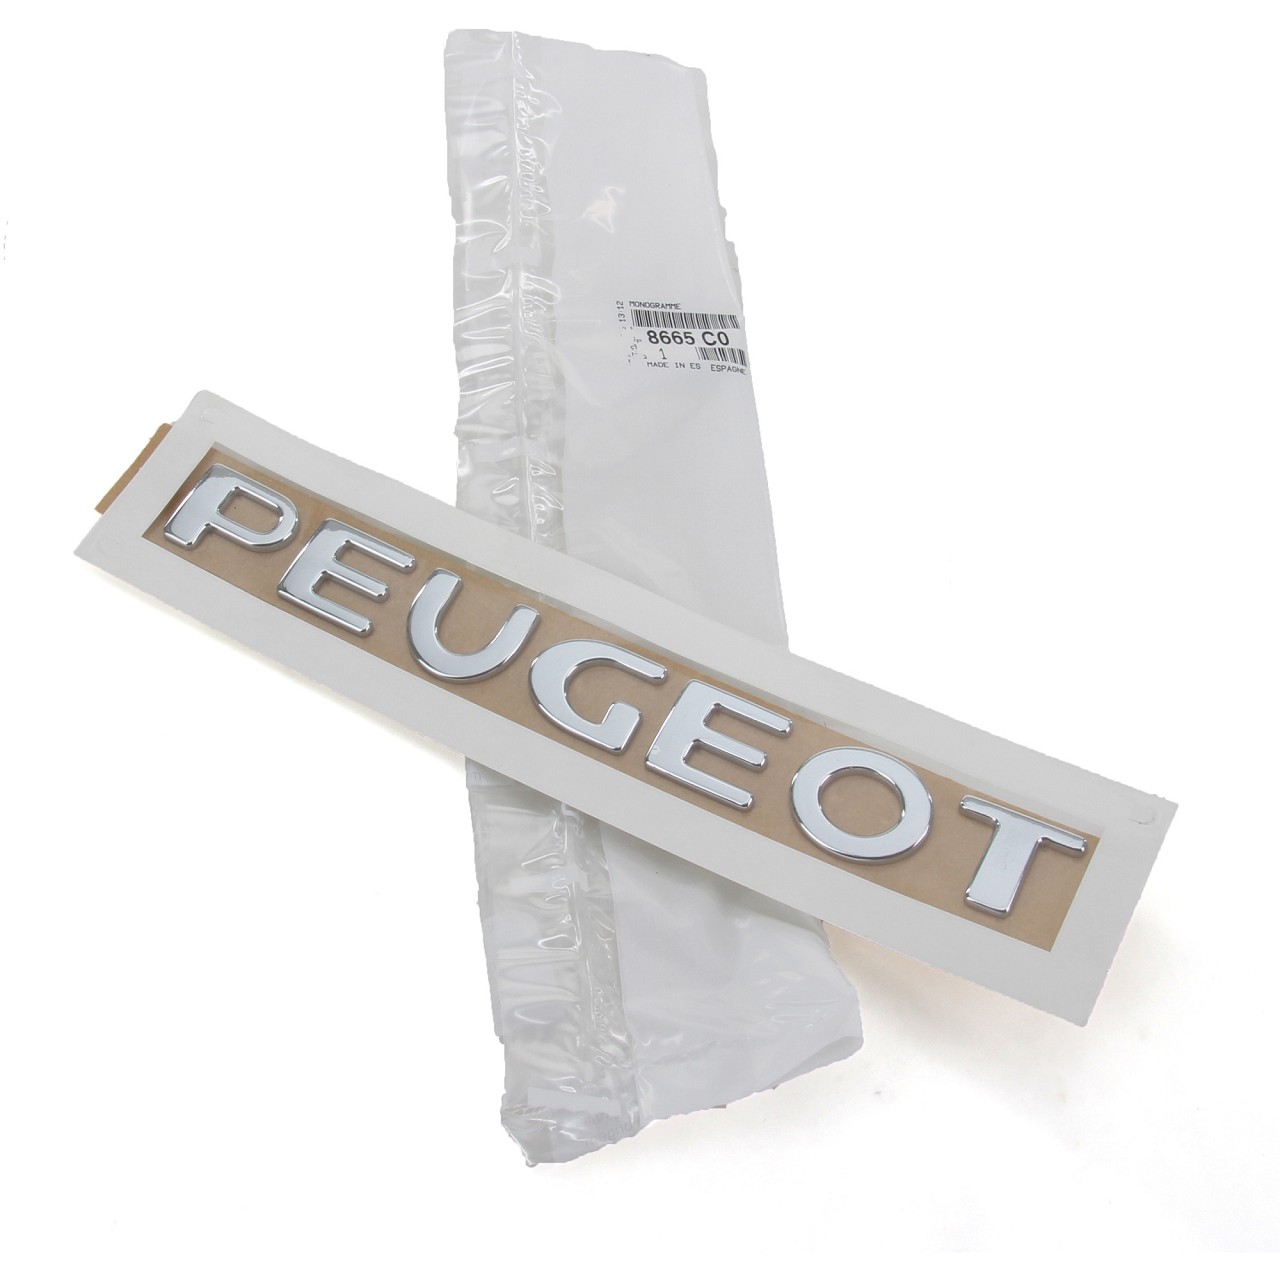 ORIGINAL Peugeot Emblem Plakette Logo Schriftzug Heckklappe 307 Partner  8665.C0